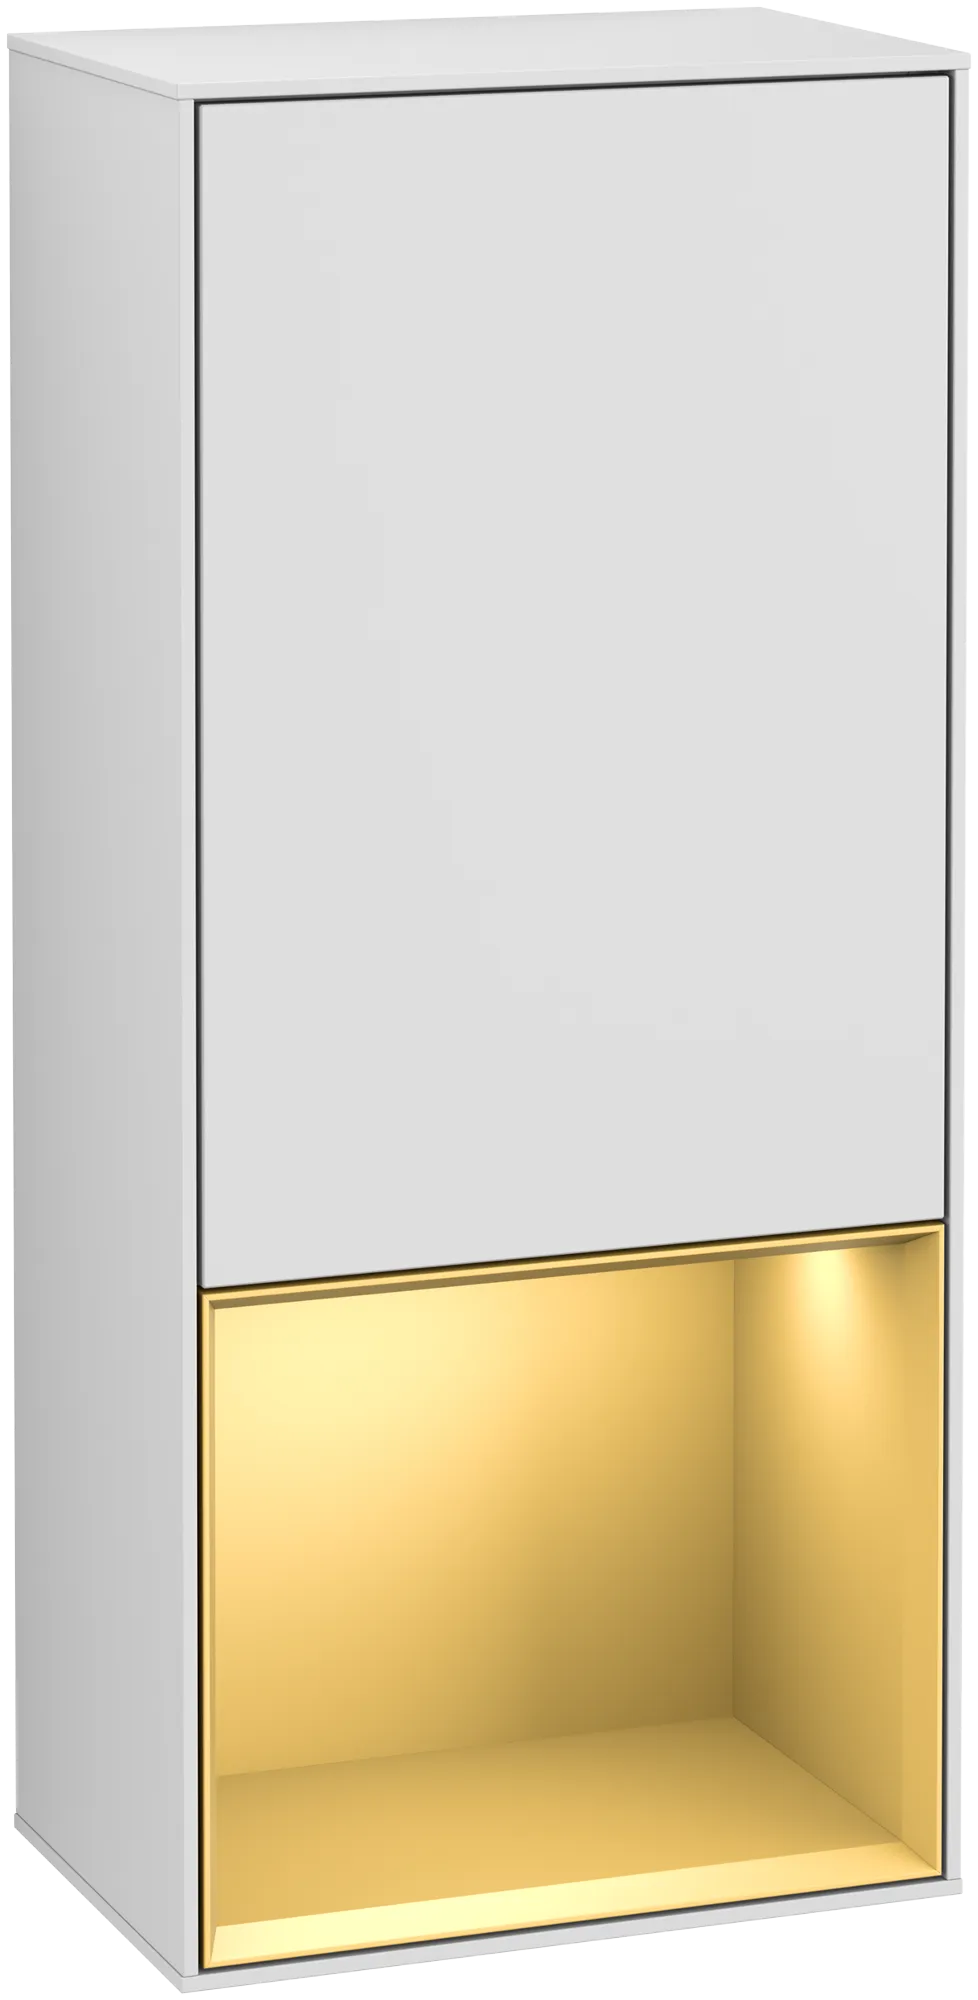 Bild von VILLEROY BOCH Finion Seitenschrank, mit Beleuchtung, 1 Tür, 418 x 936 x 270 mm, White Matt Lacquer / Gold Matt Lacquer #G540HFMT